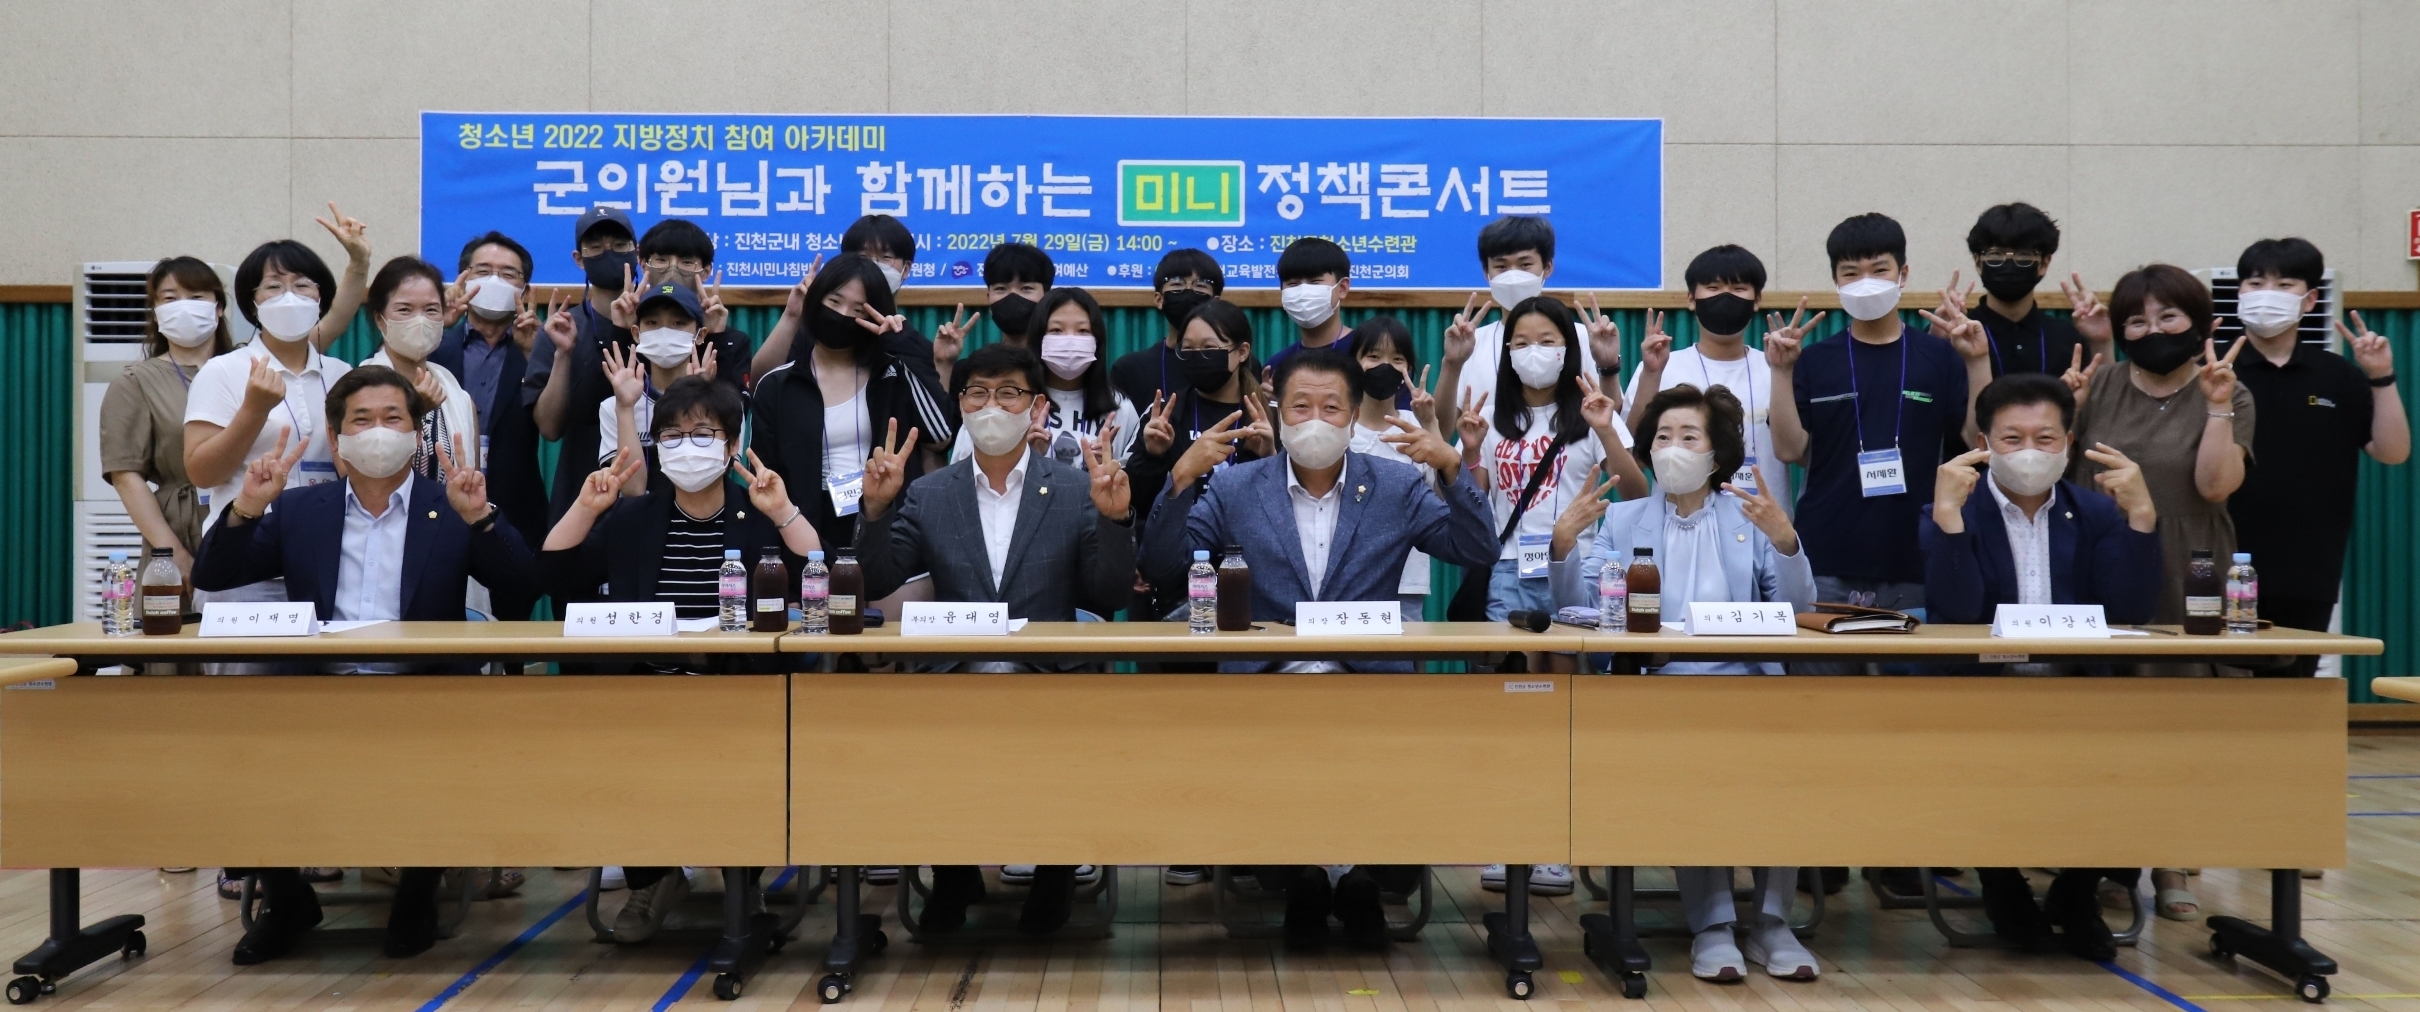 진천군의회 의원과 함께하는‘미니 정책 토크 콘서트’2